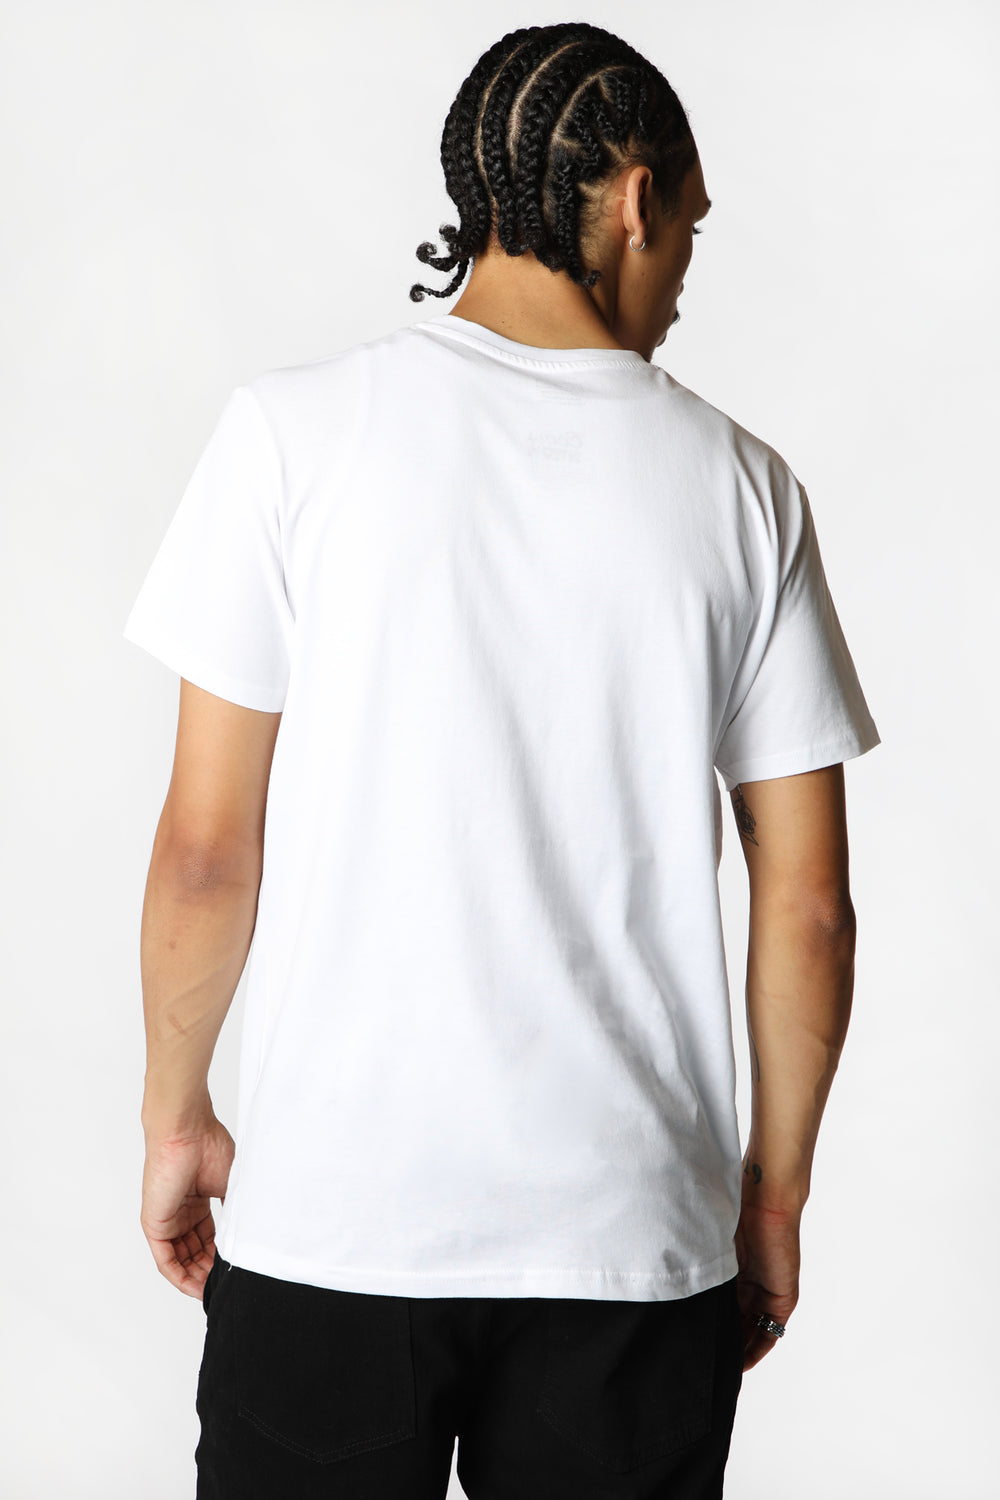 T-Shirt Imprimé Coors Original Homme Blanc